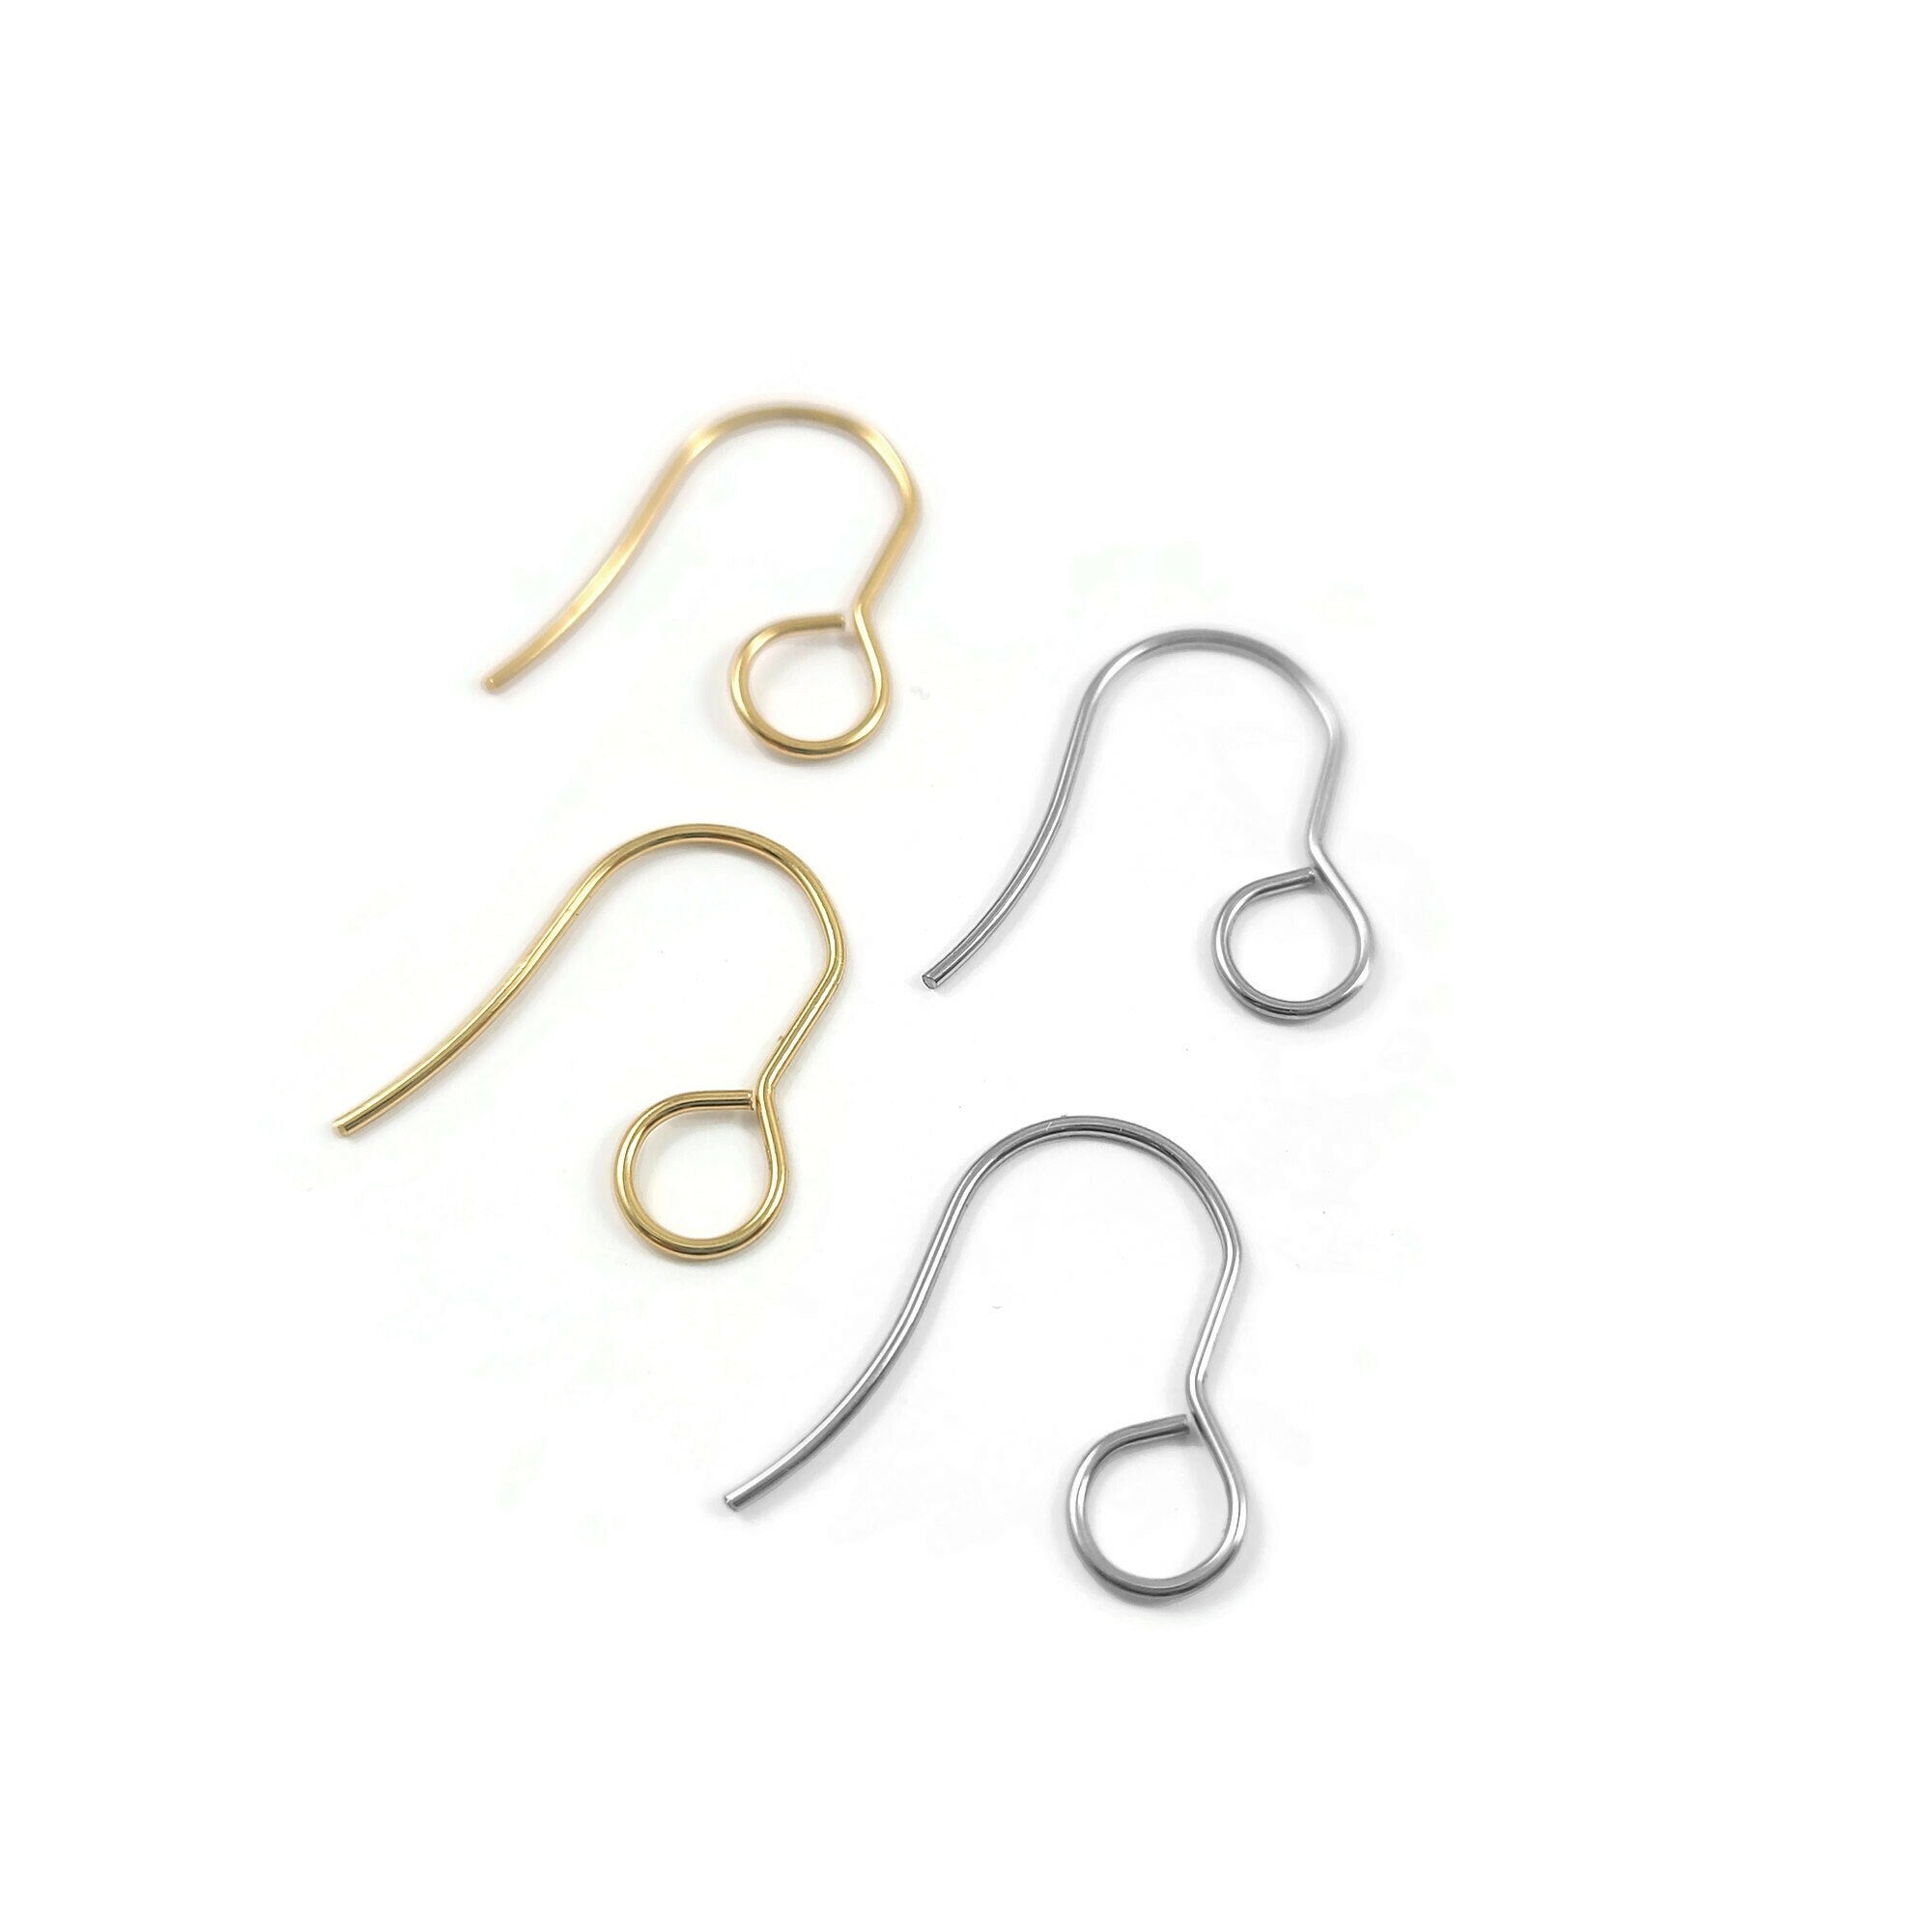 Earring Clasps Hooks - 20*17mm Earrings Wire Hook Jewelry Making Supplies  100pcs